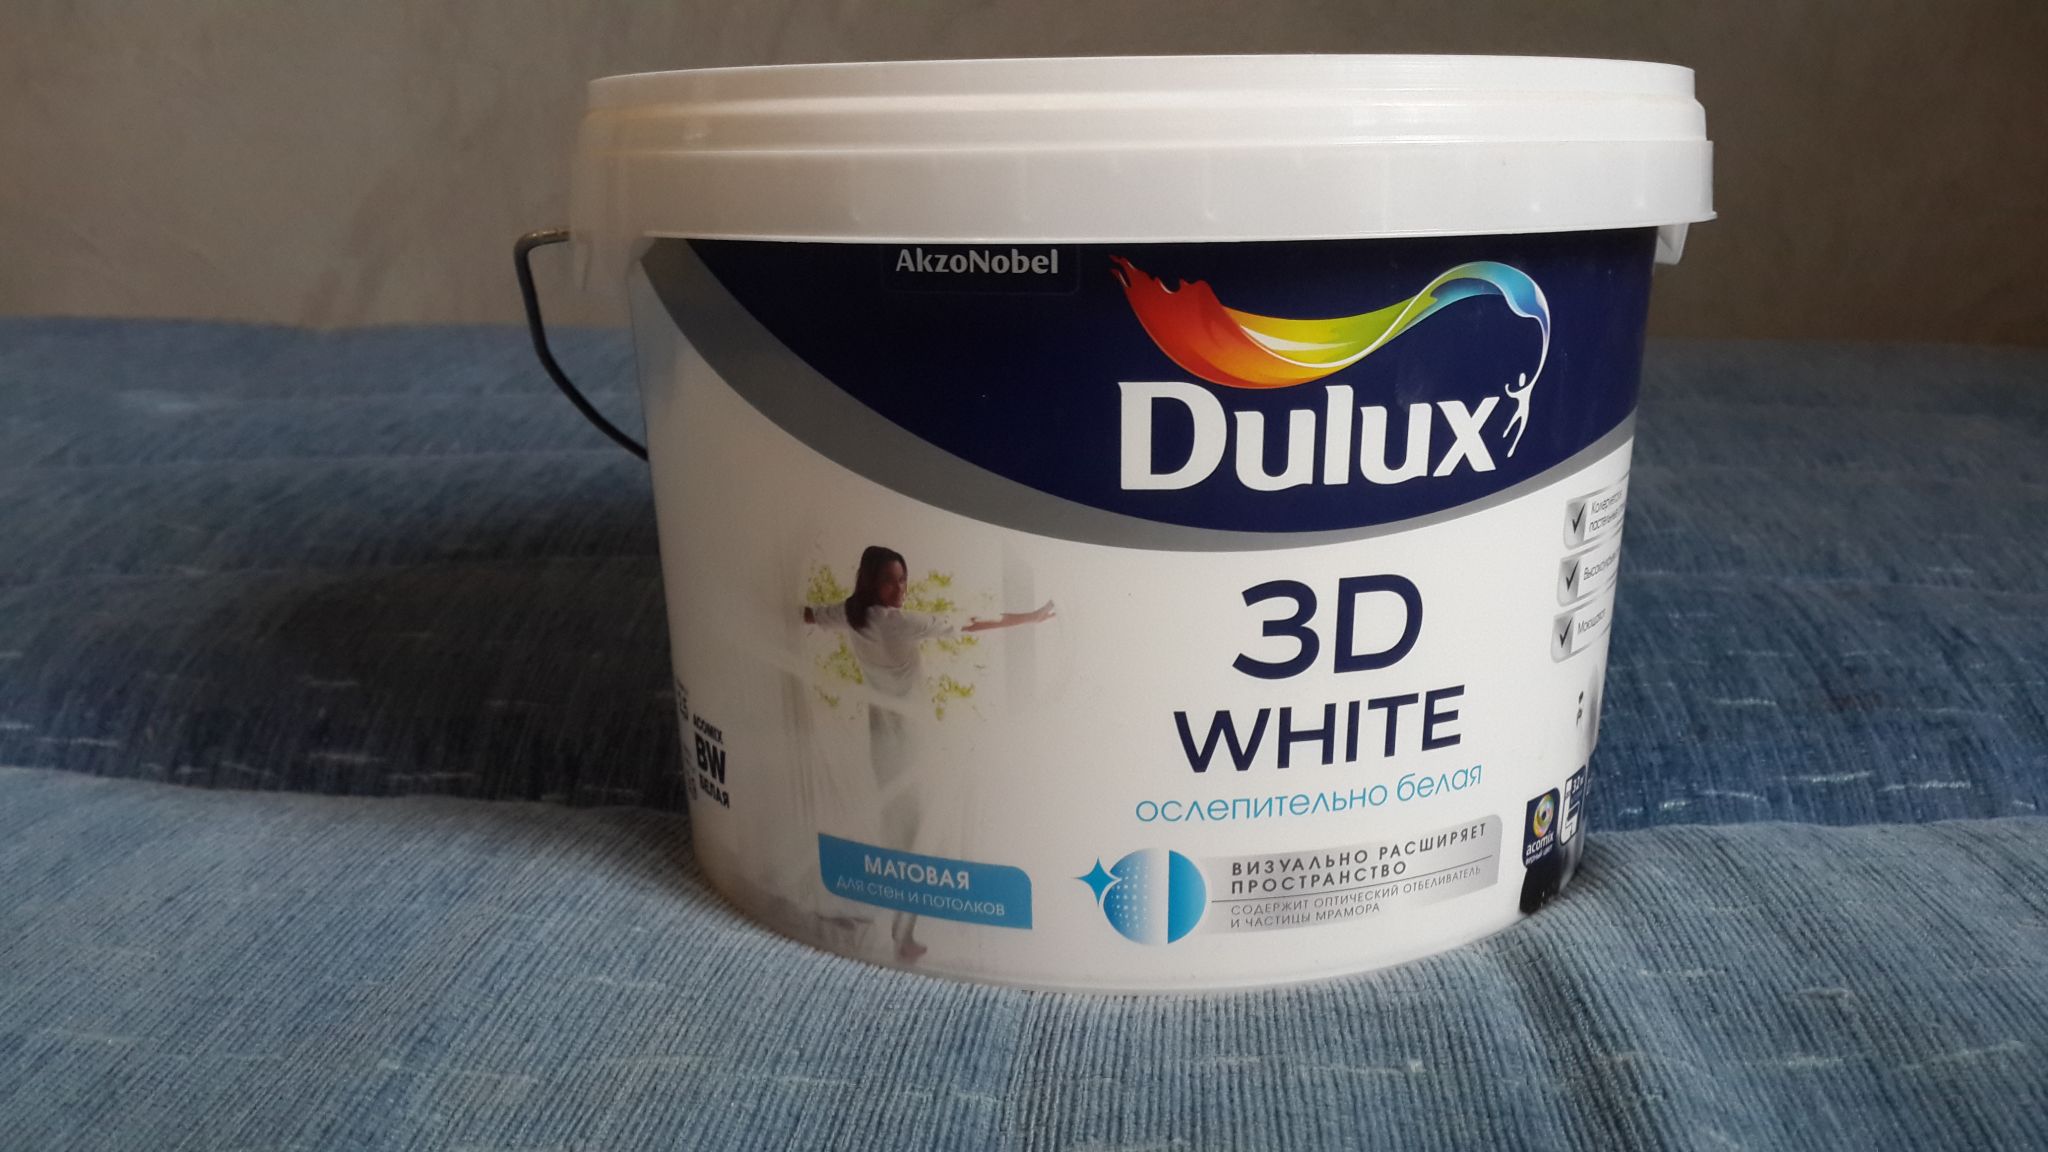 Краска для потолка моющаяся белая матовая. Dulux 3d White краска для стен и потолков. Краска для стен и потолков Dulux 3d White матовая 9л. Dulux 3d White 5 л. Делюкс 3д Вайт краска.